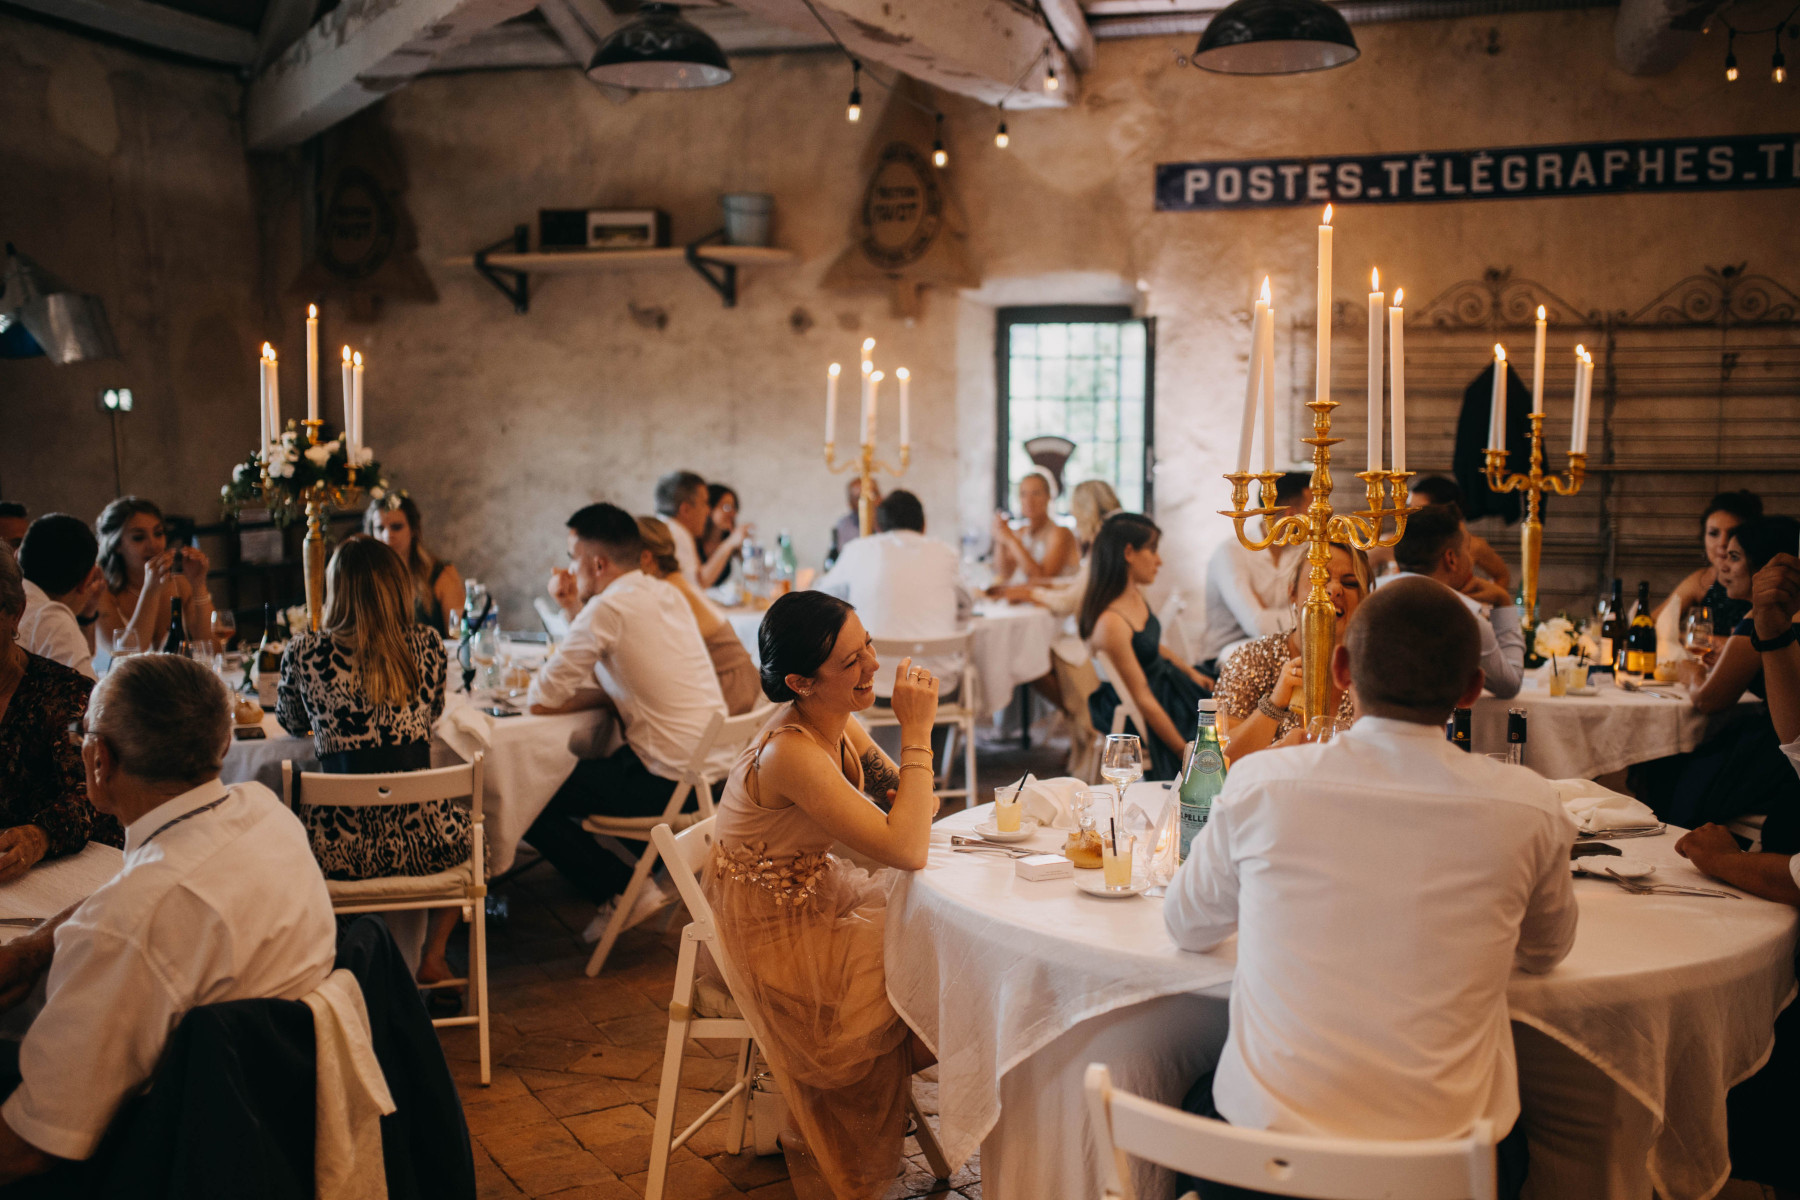 Les salles de mariage du Château de Bois Rigaud en Auvergne vous permettront d'organiser un repas de fête intimiste.